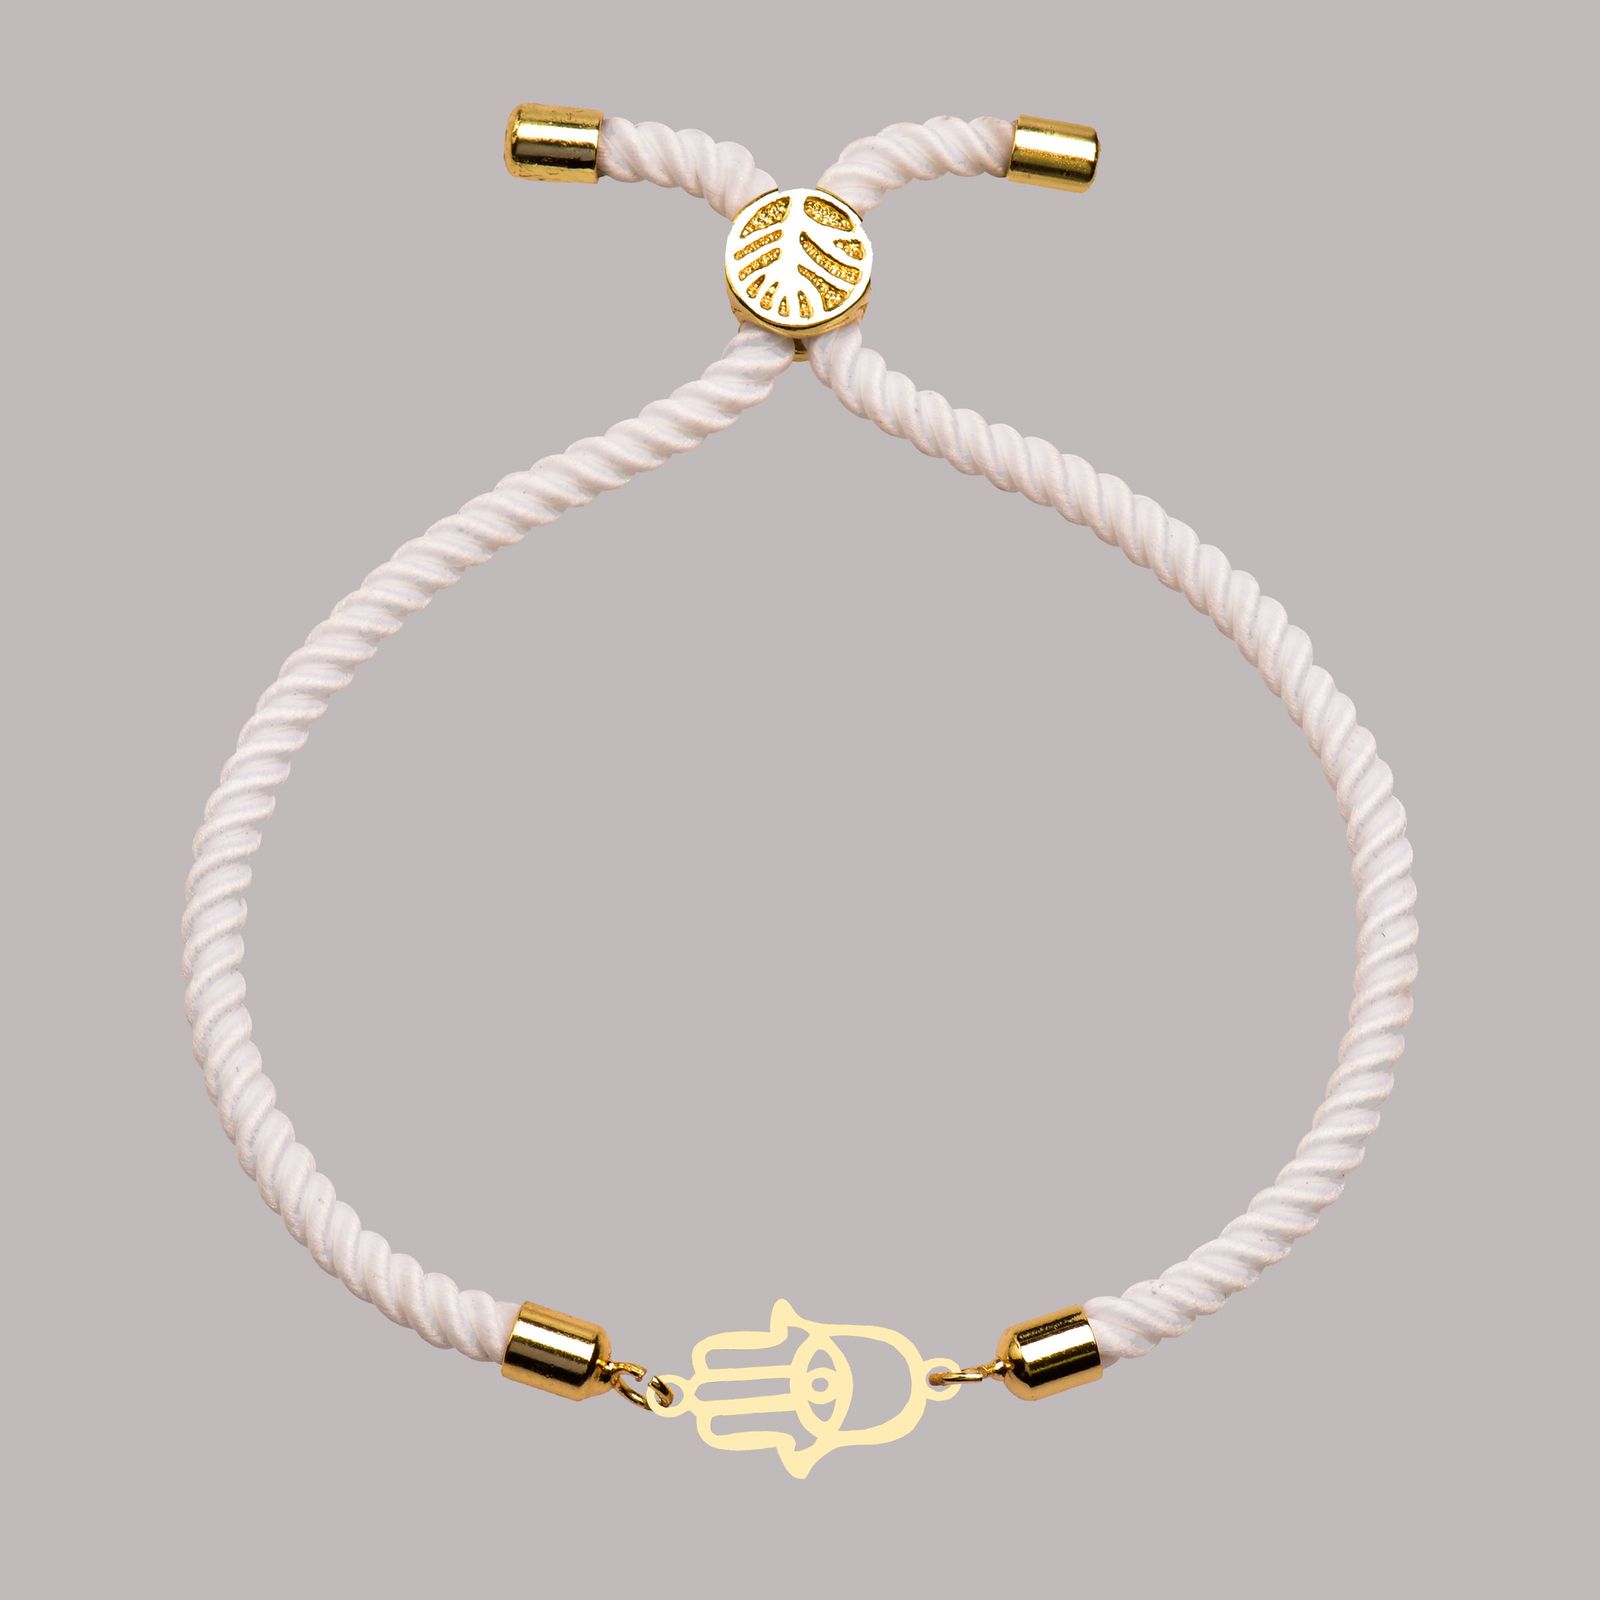 دستبند طلا 18 عیار زنانه کرابو طرح دست هما مدل Kr102239 -  - 1